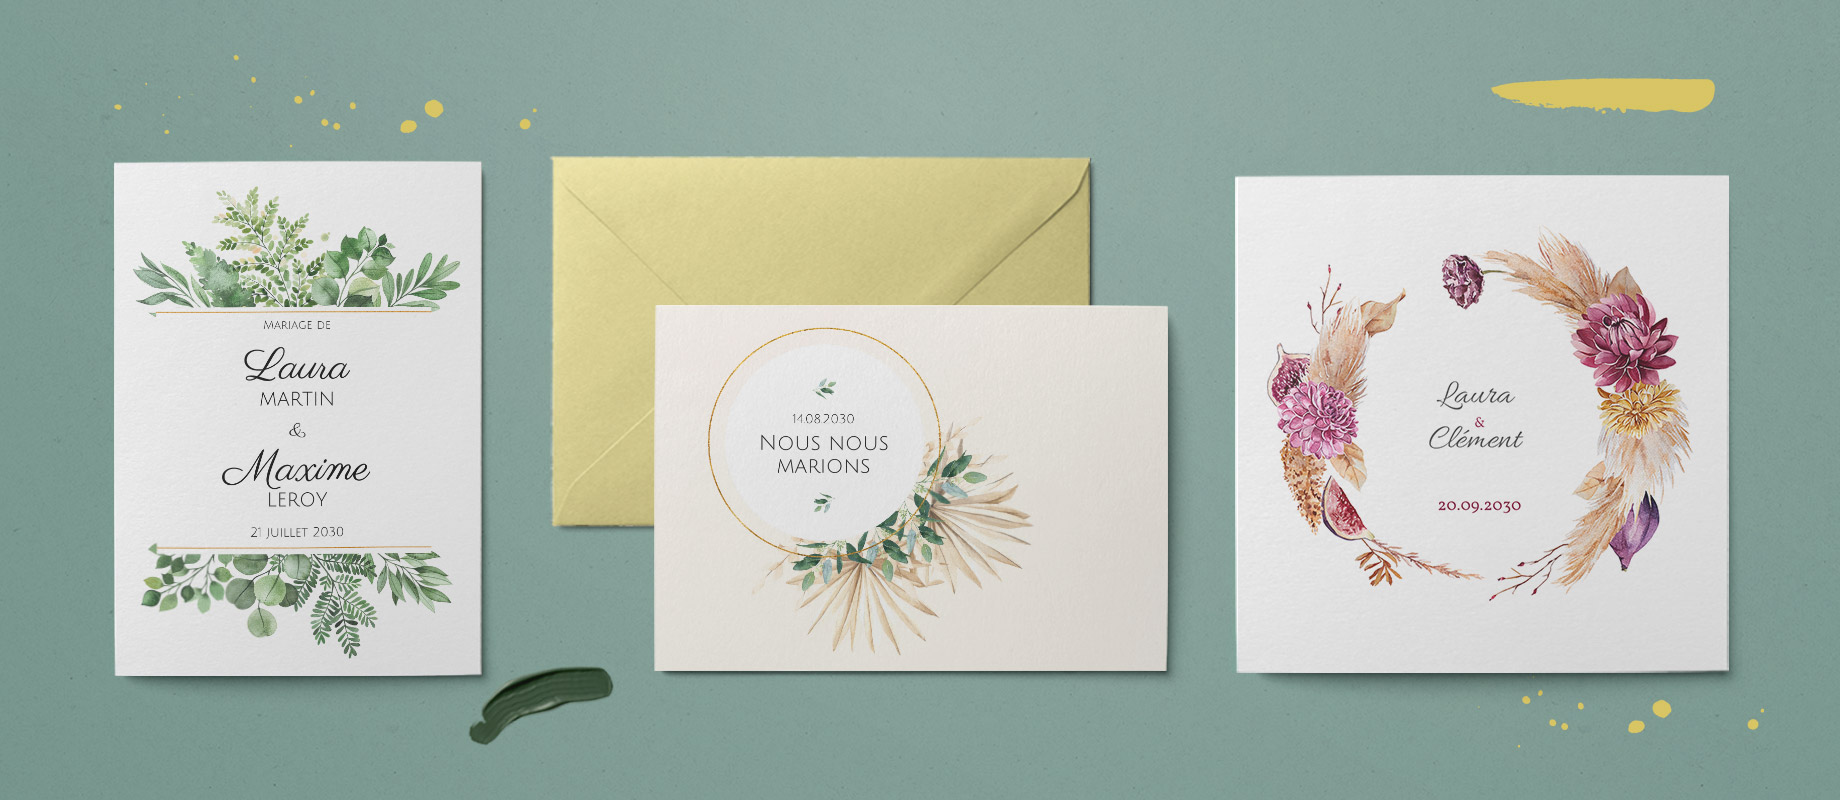 Trois cartes d'invitation mariage personnalisés avec des fleurs et des plantes sur papier blanc ou beige